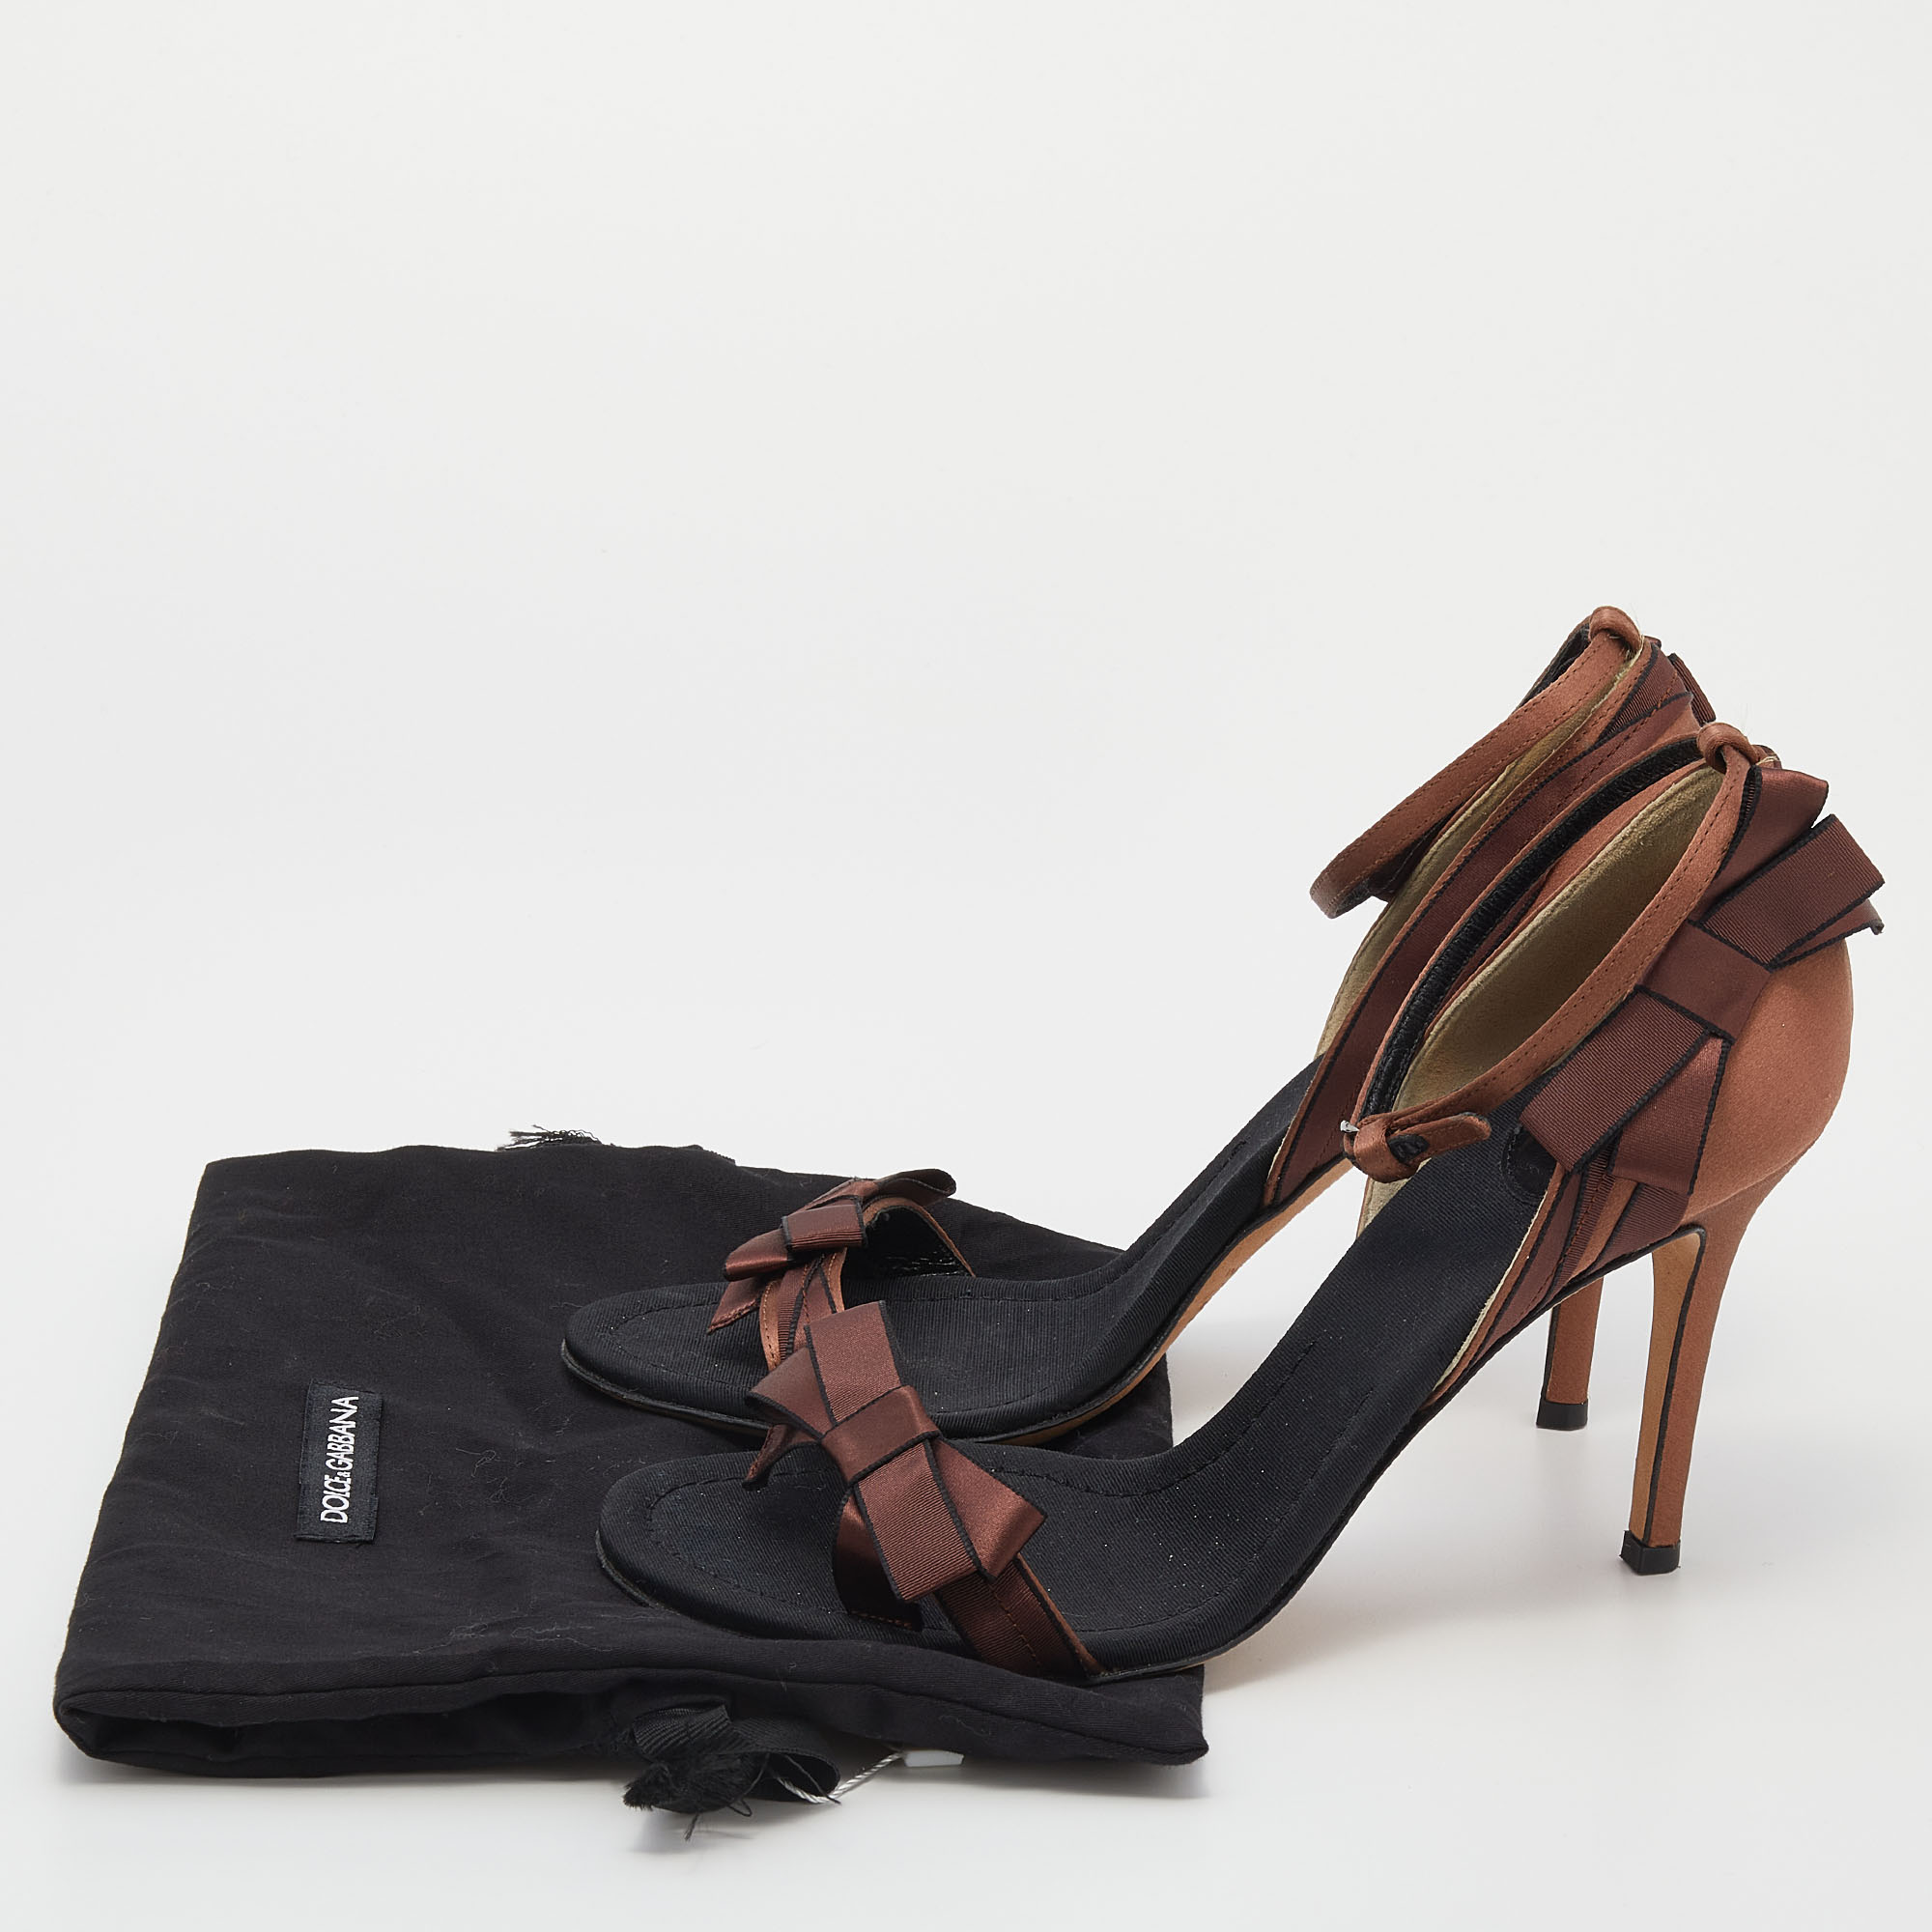 D&G Brown/Black Satin Bow Embellished Ankle Strap Sandals Size 39